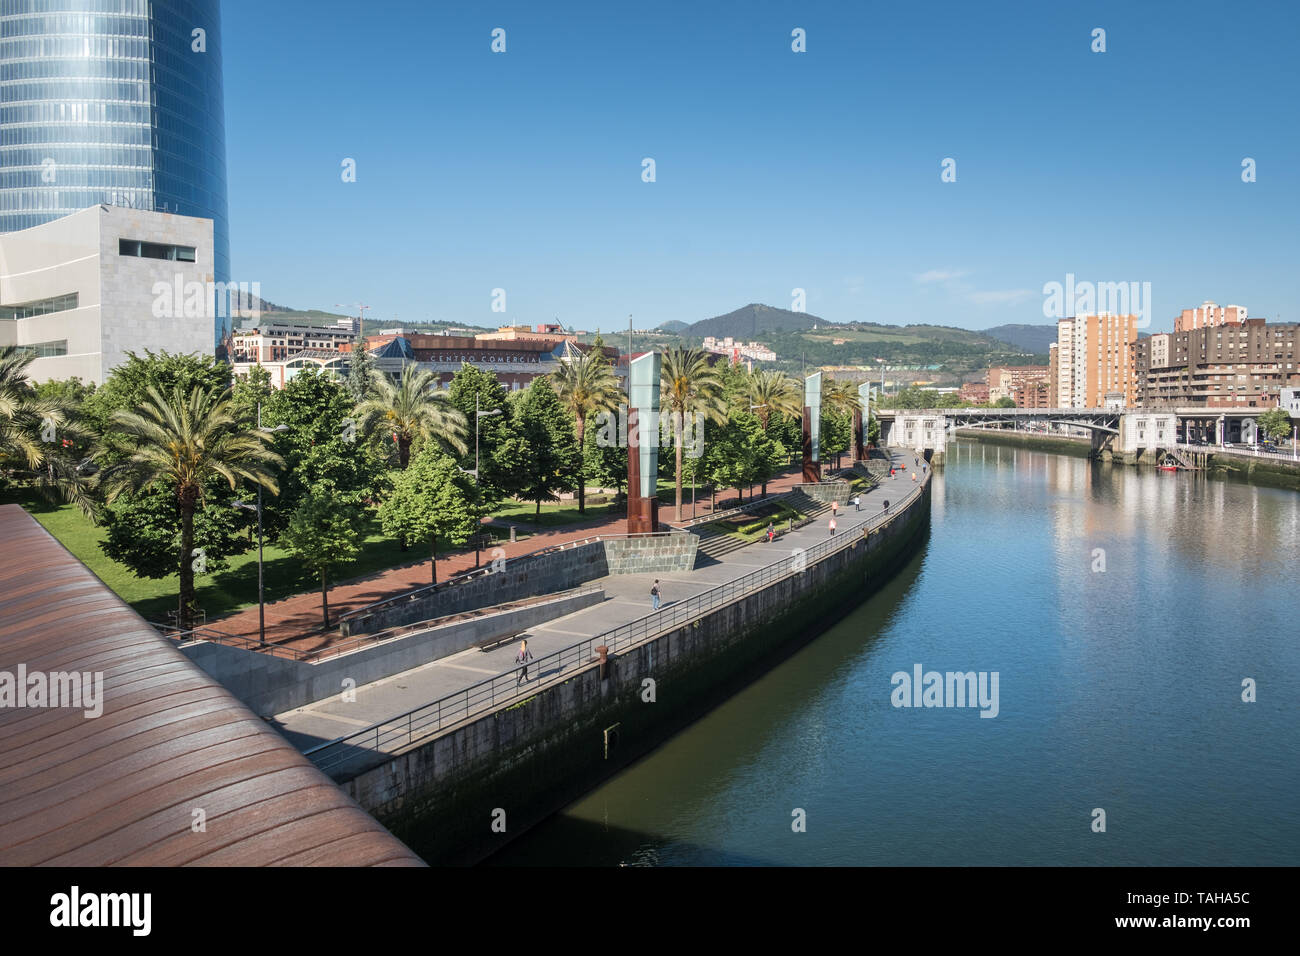 República de Abando Park, a public park in Bizkaia alongside the Nervion river, Bilbao, Basque Country, Spain Stock Photo